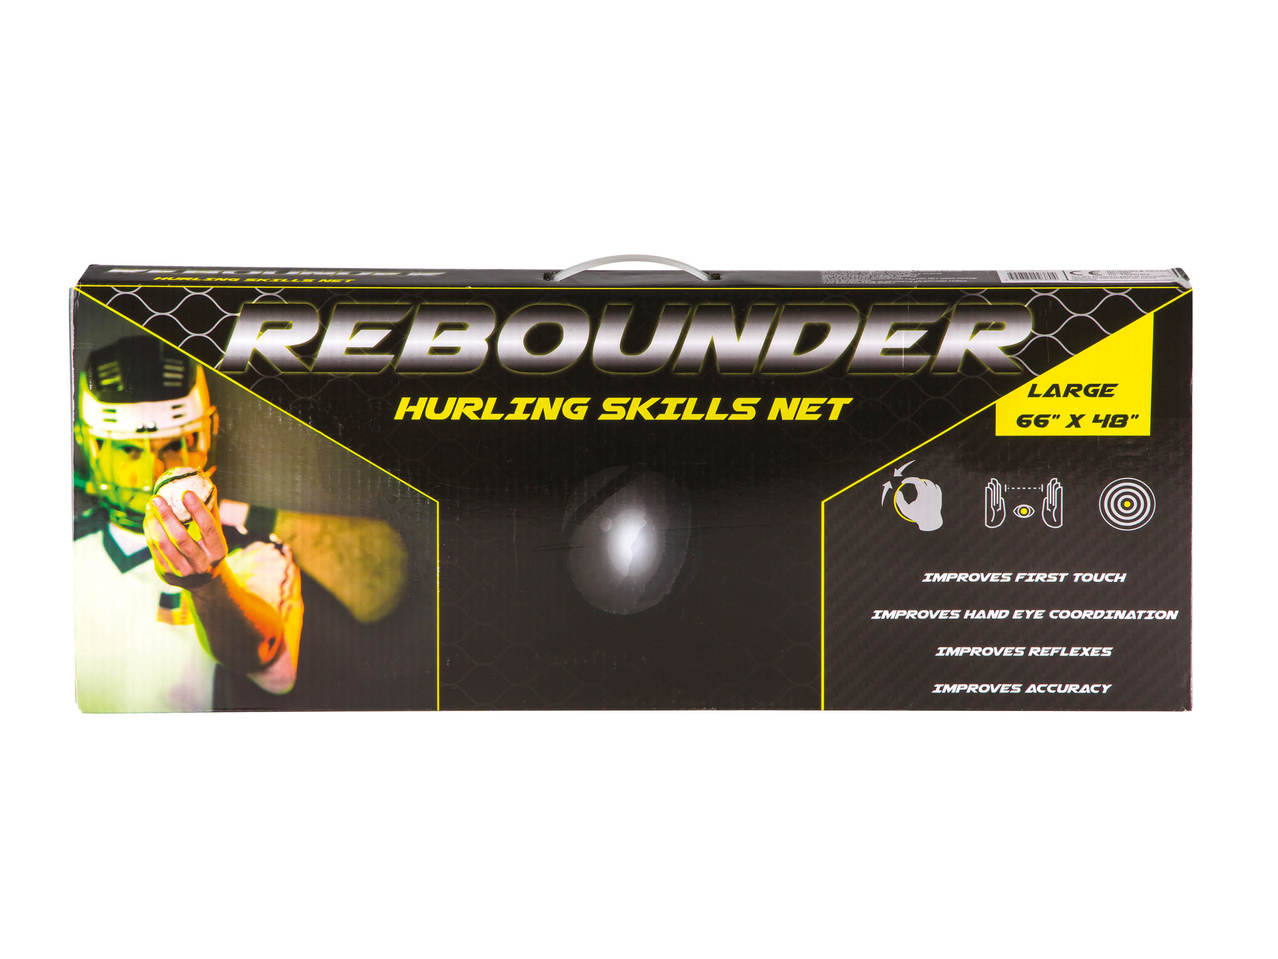 Rebounder Hurling Skills Net